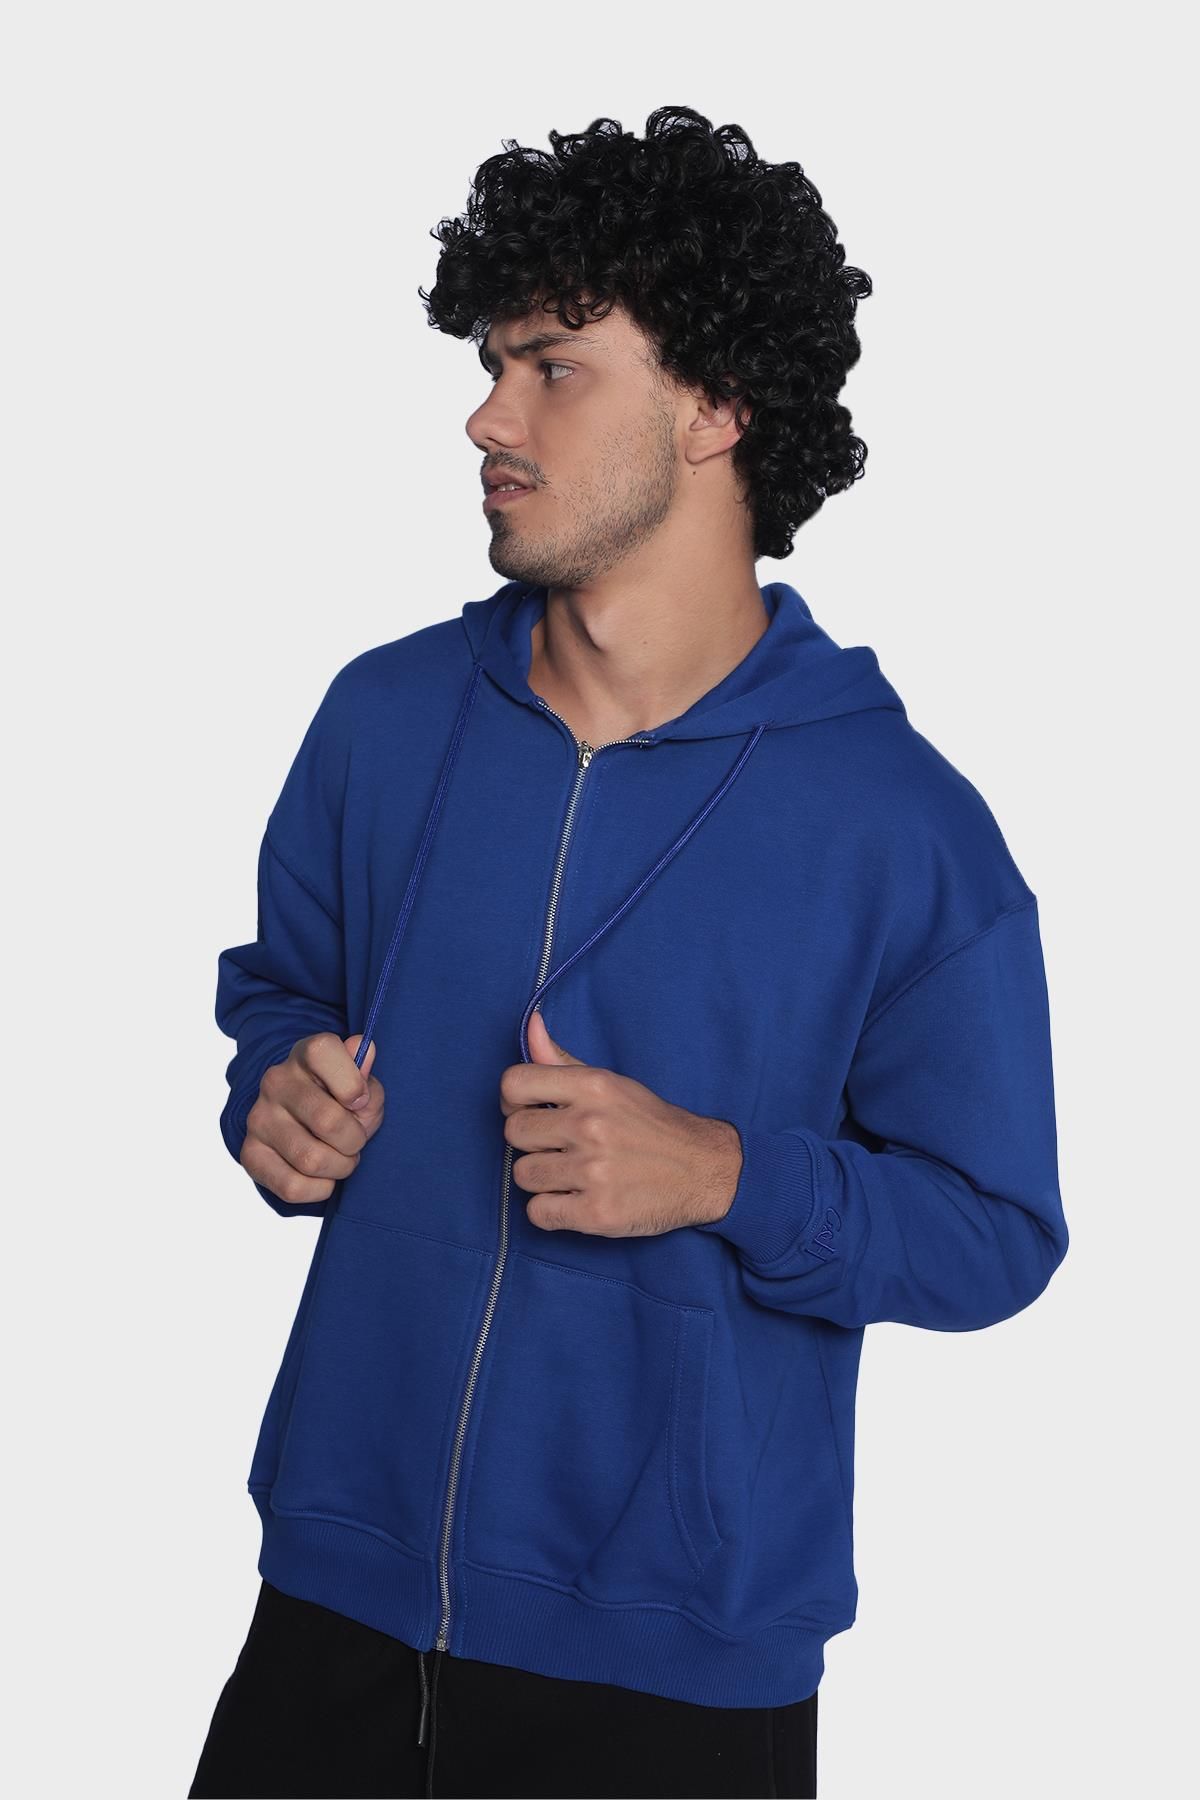 Mens hoodie, long sleeve and zip-up sweatshirt - Sax blue